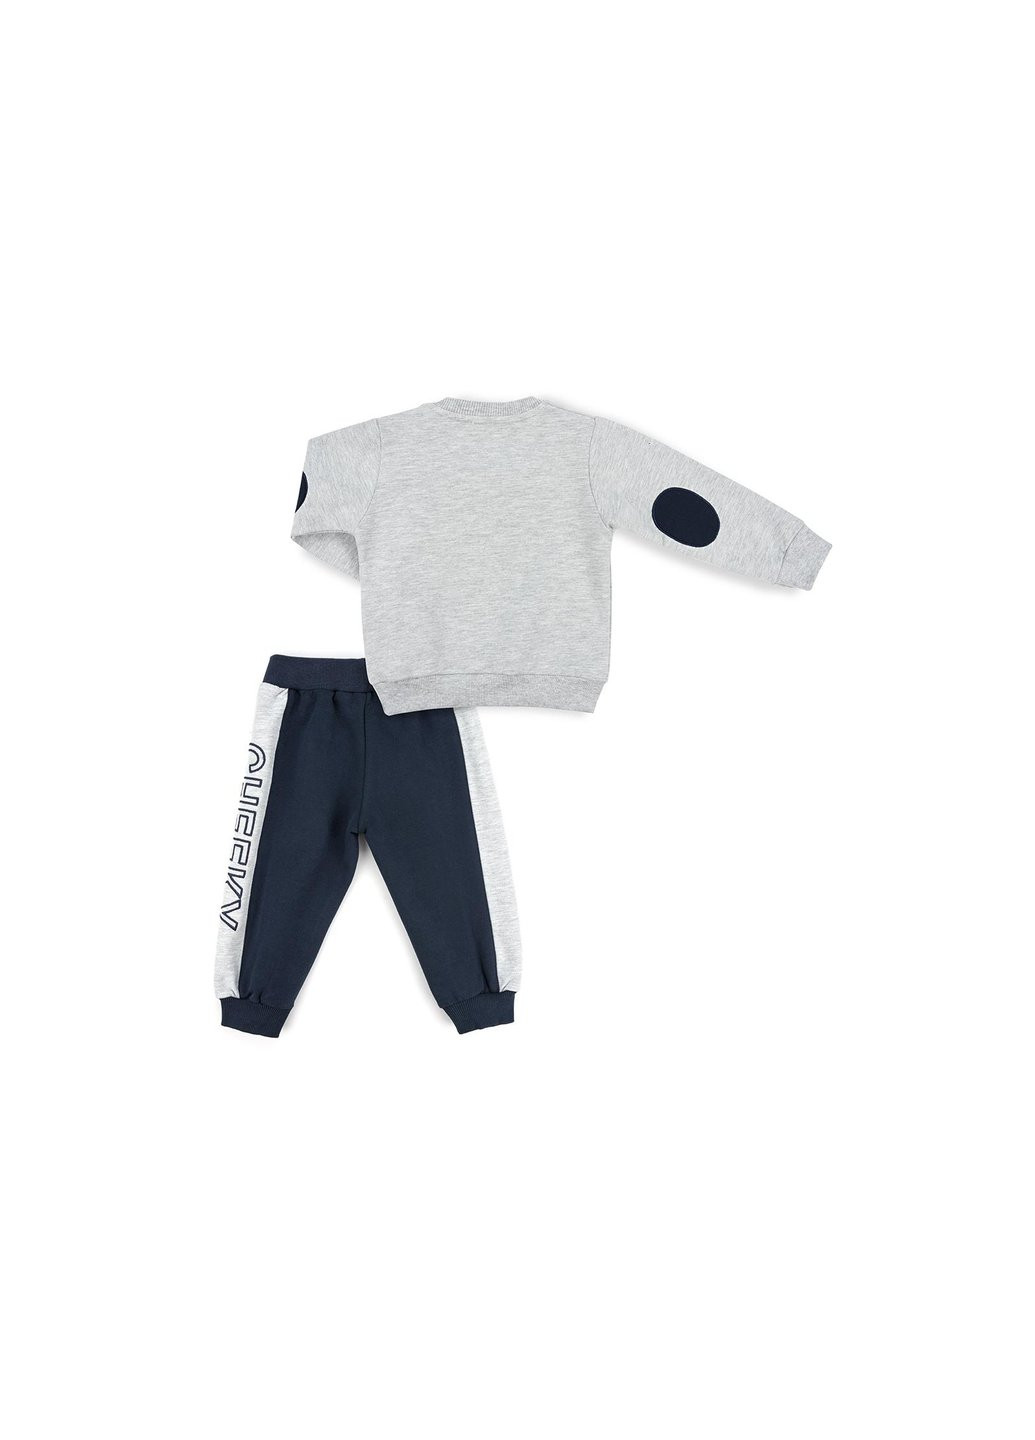 Серый демисезонный набор детской одежды с обезьянкой (11244-98b-gray) Breeze